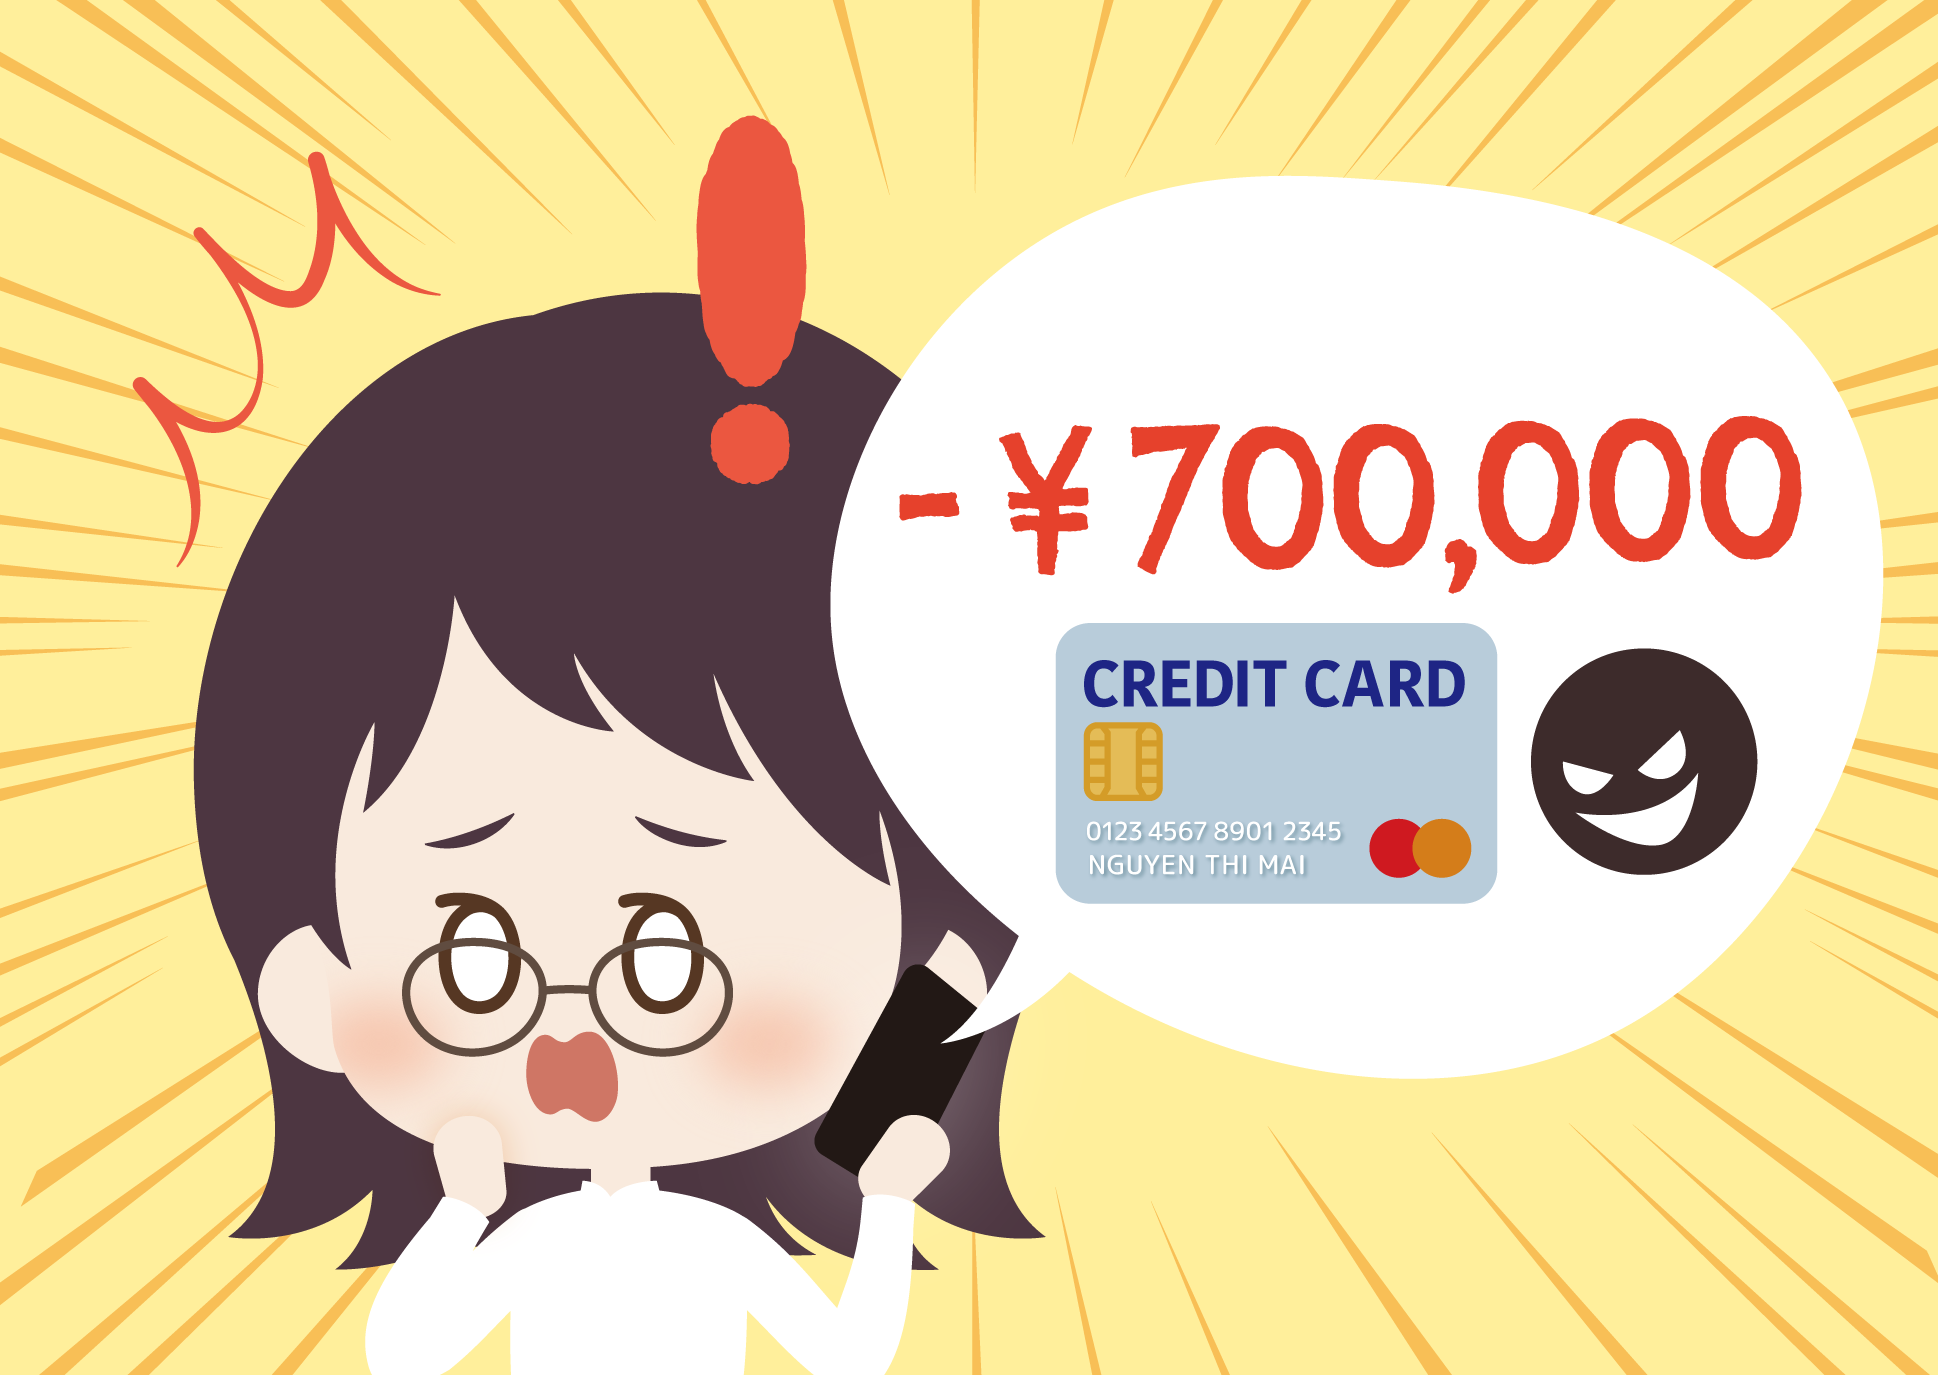 Apa yang harus dilakukan jika Credit Card dipakai orang tak dikenal?